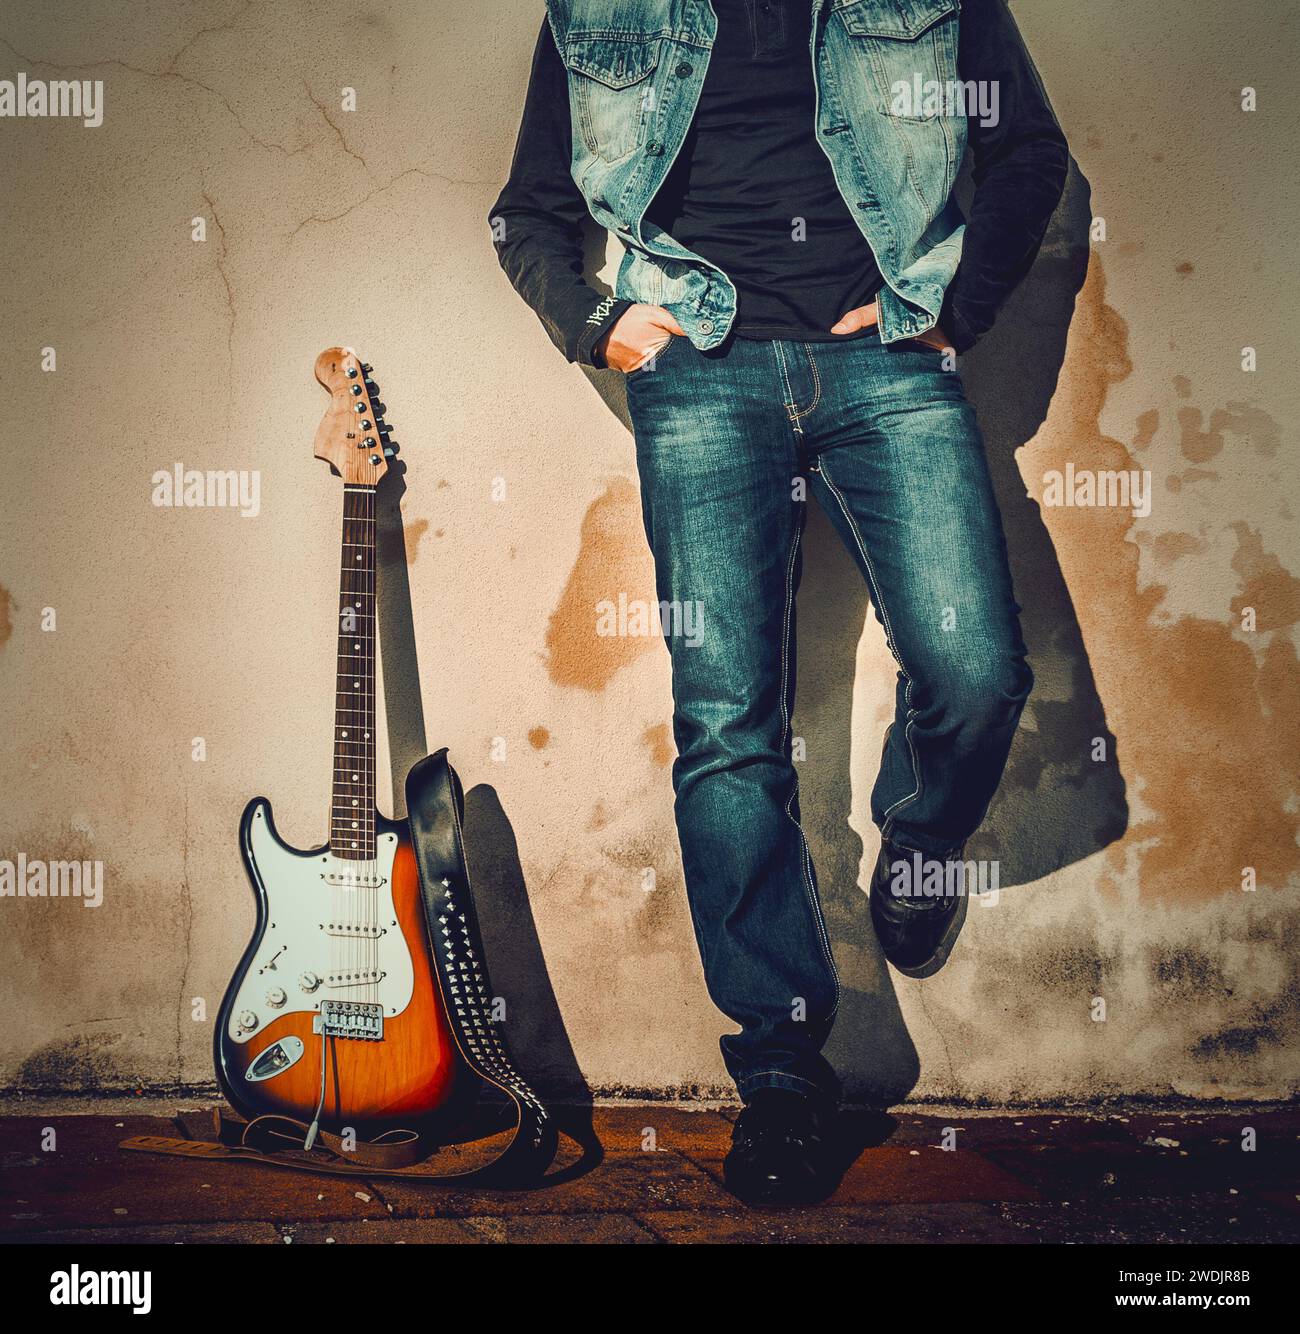 Vorderansicht eines Mannes und einer Gitarre, die auf einer Grunge-Wand gelehnt sind Stockfoto